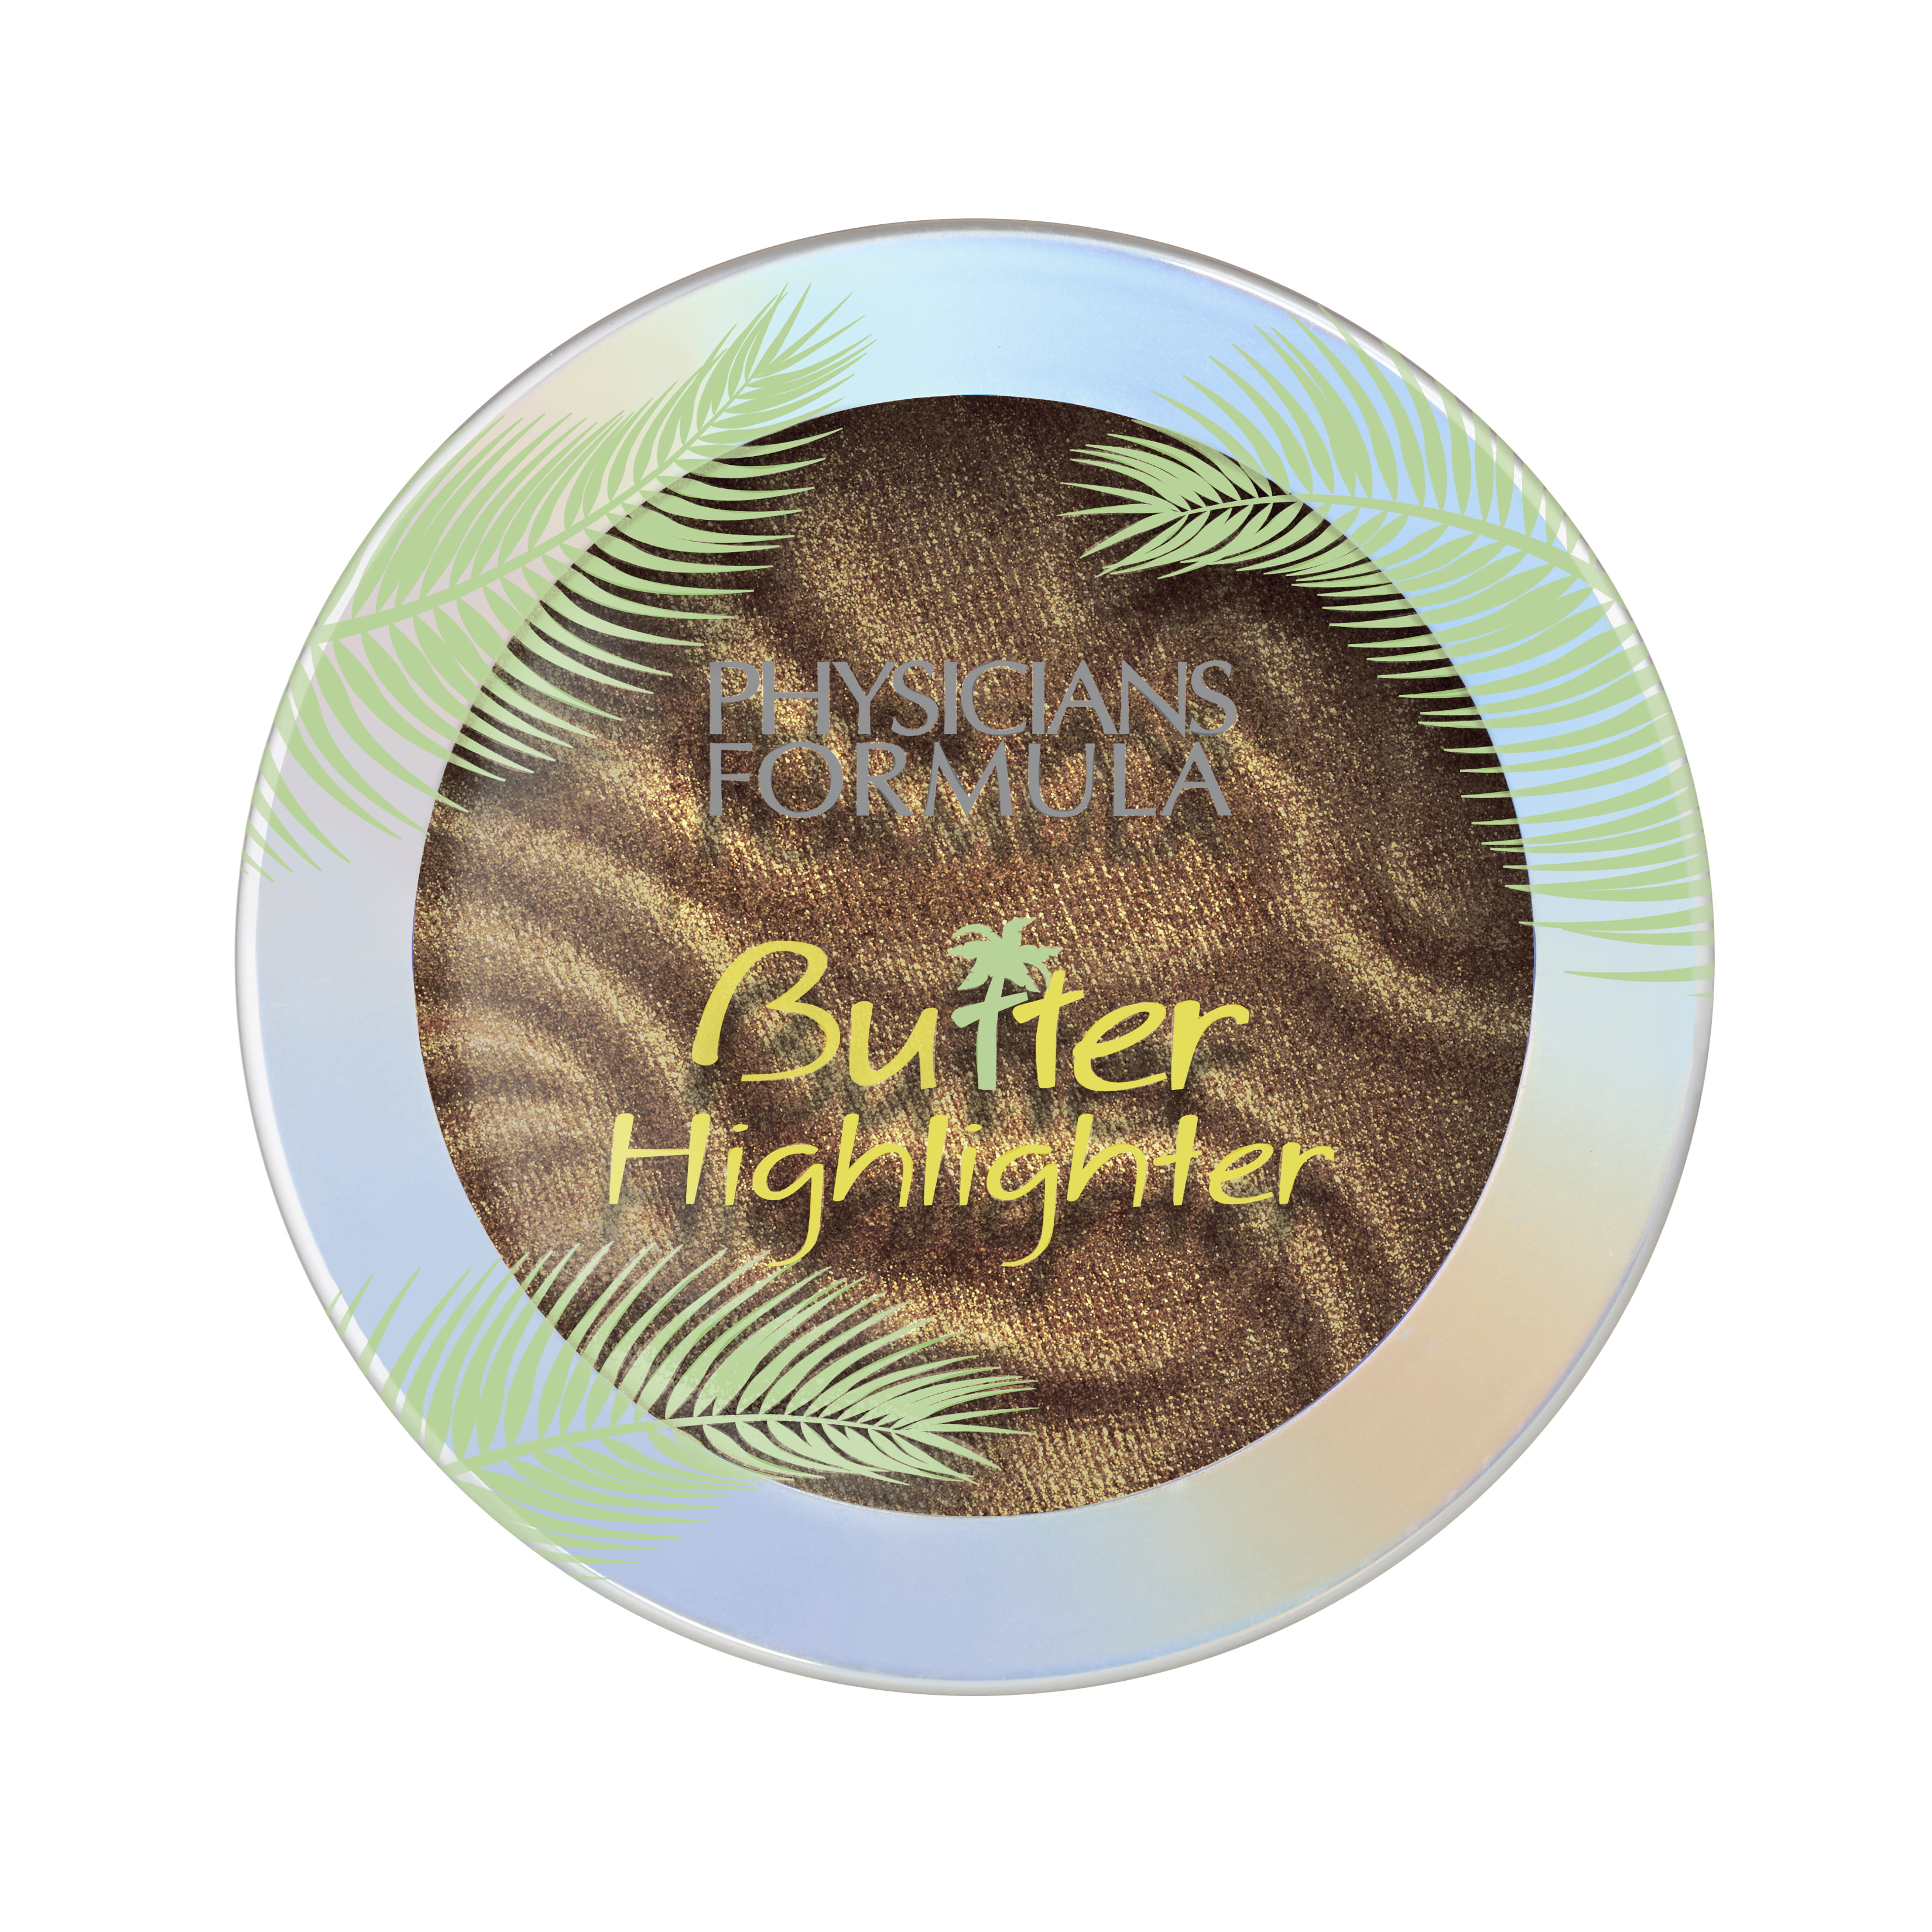 Formula Butter Highlighter, Copper - Walmart.com